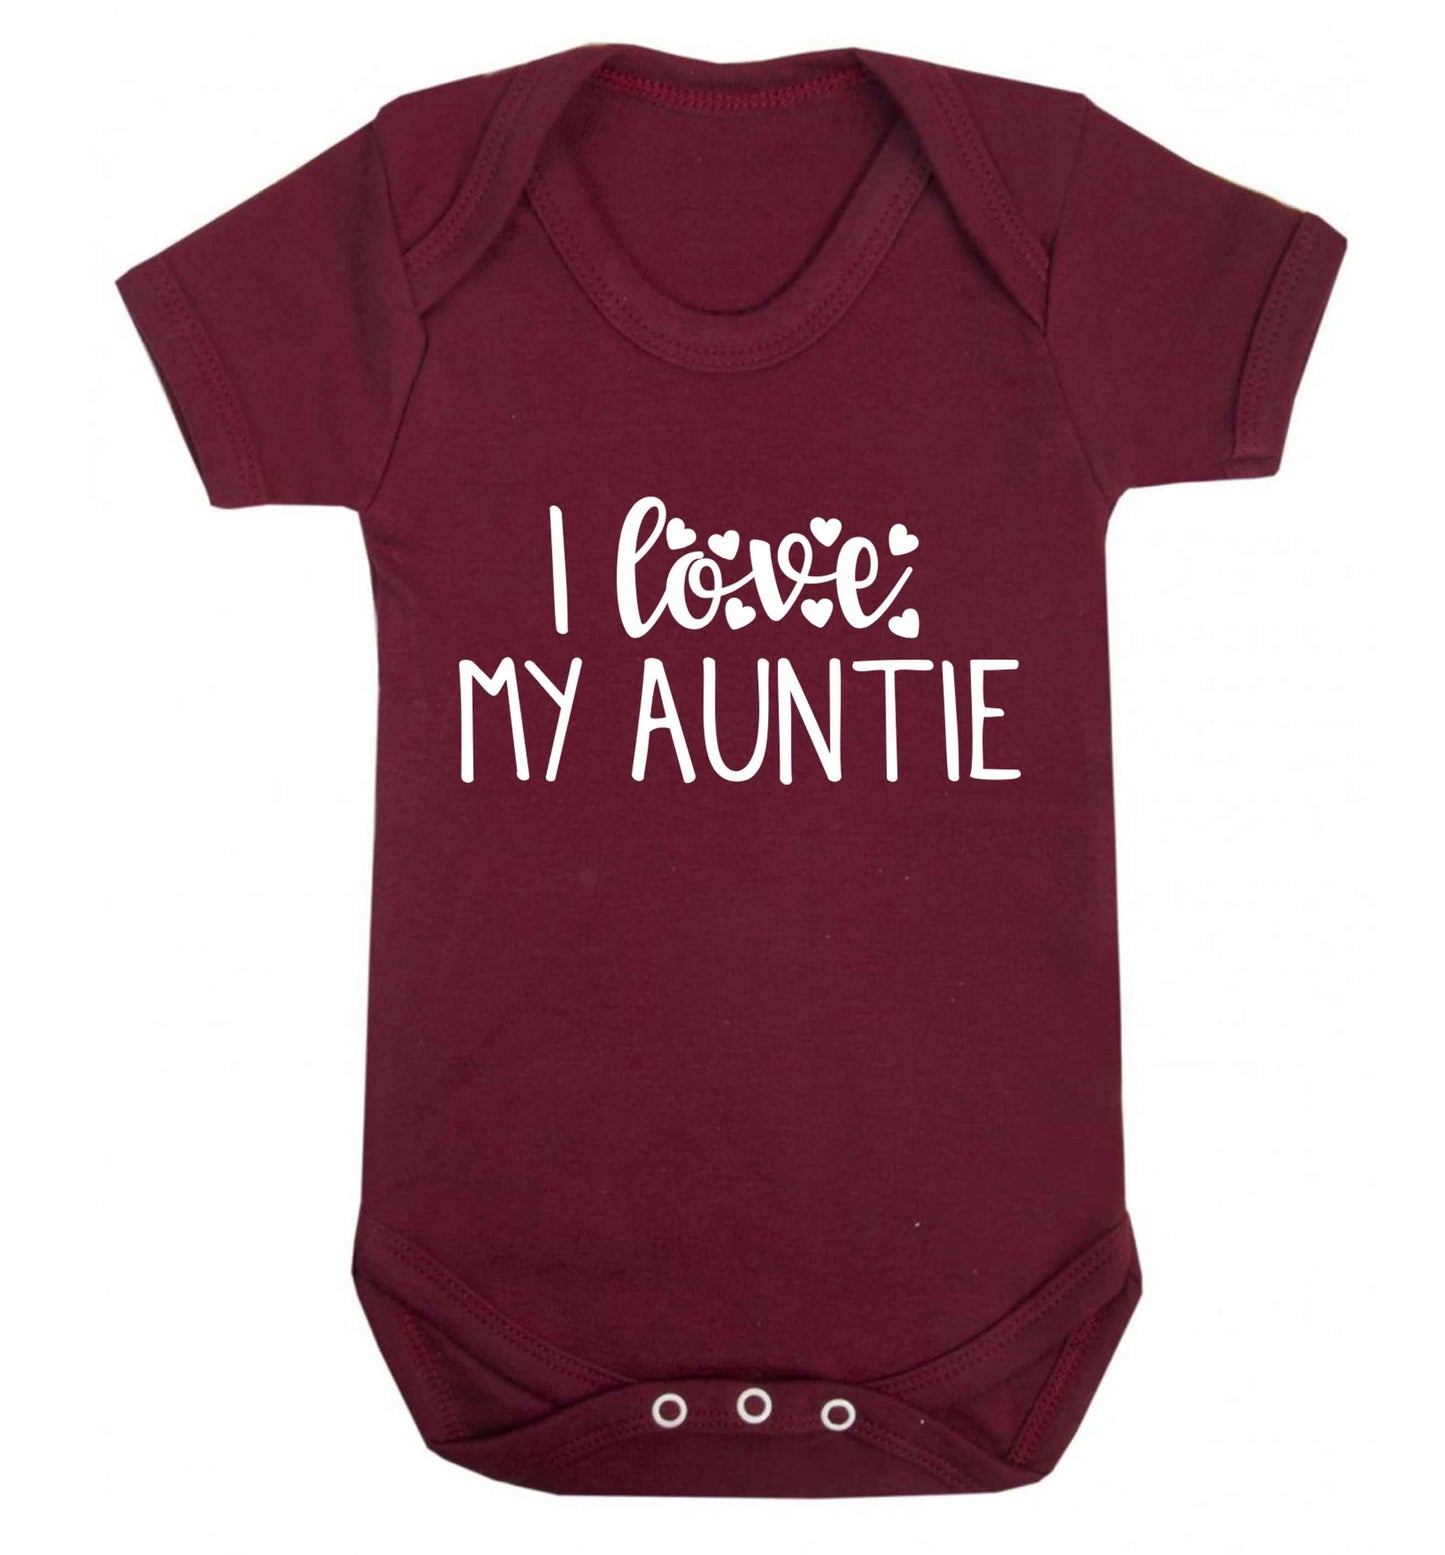 I love my auntie Baby Vest maroon 18-24 months